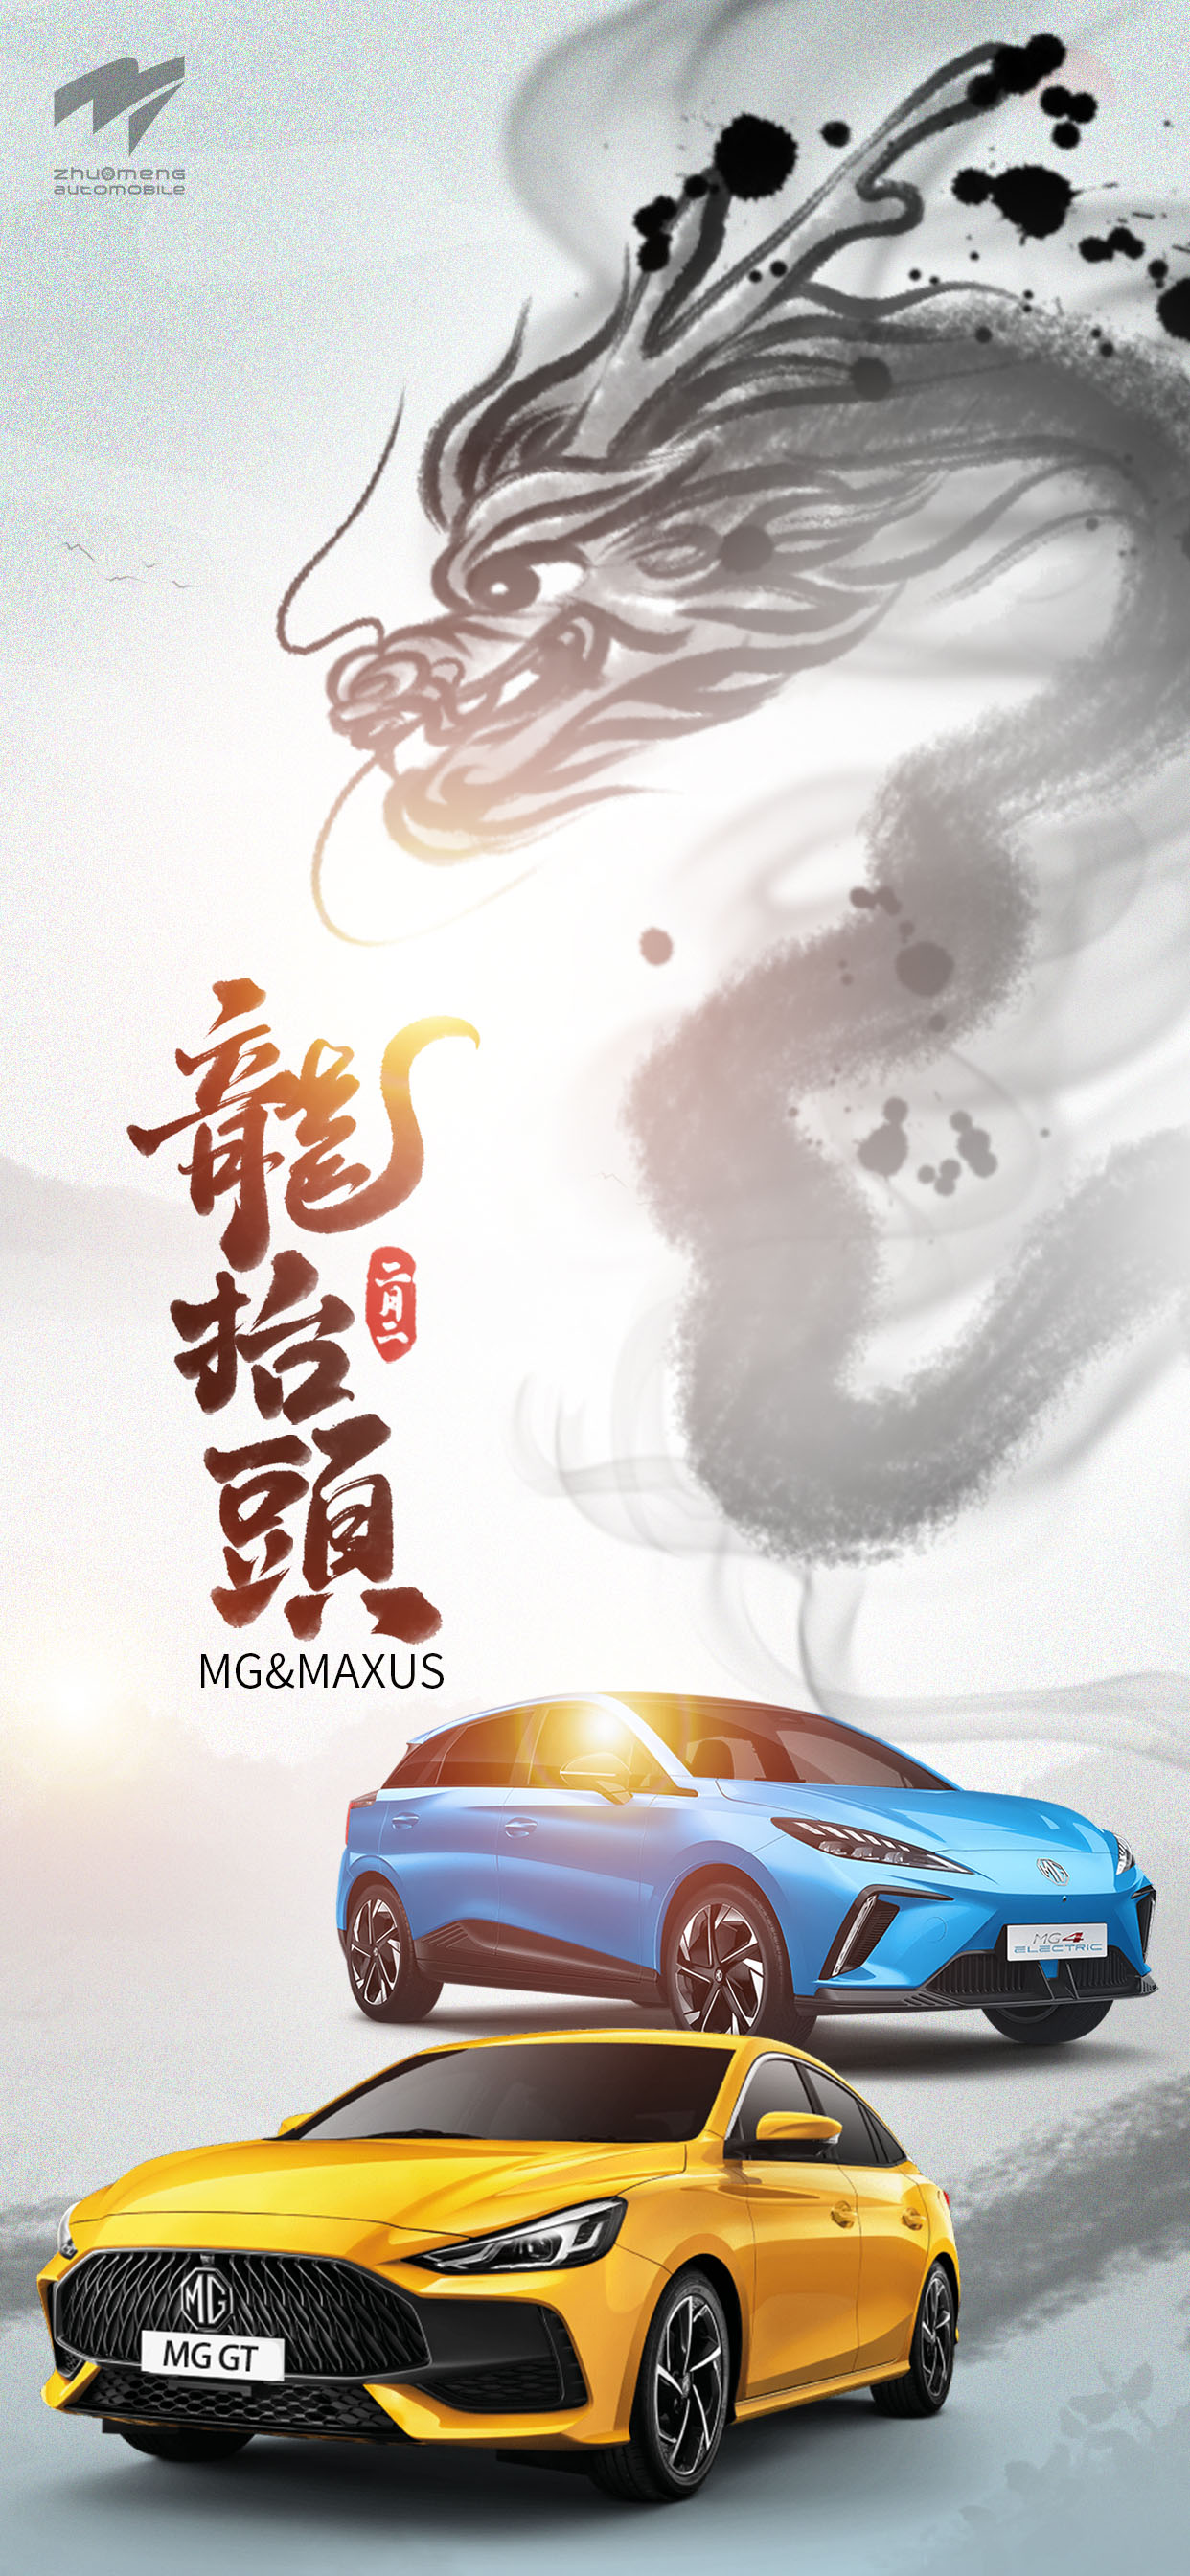 Zhuo Meng （Shanghai） Automobile Co., Ltd. Dragon Head (2 Februarie van die maankalender)